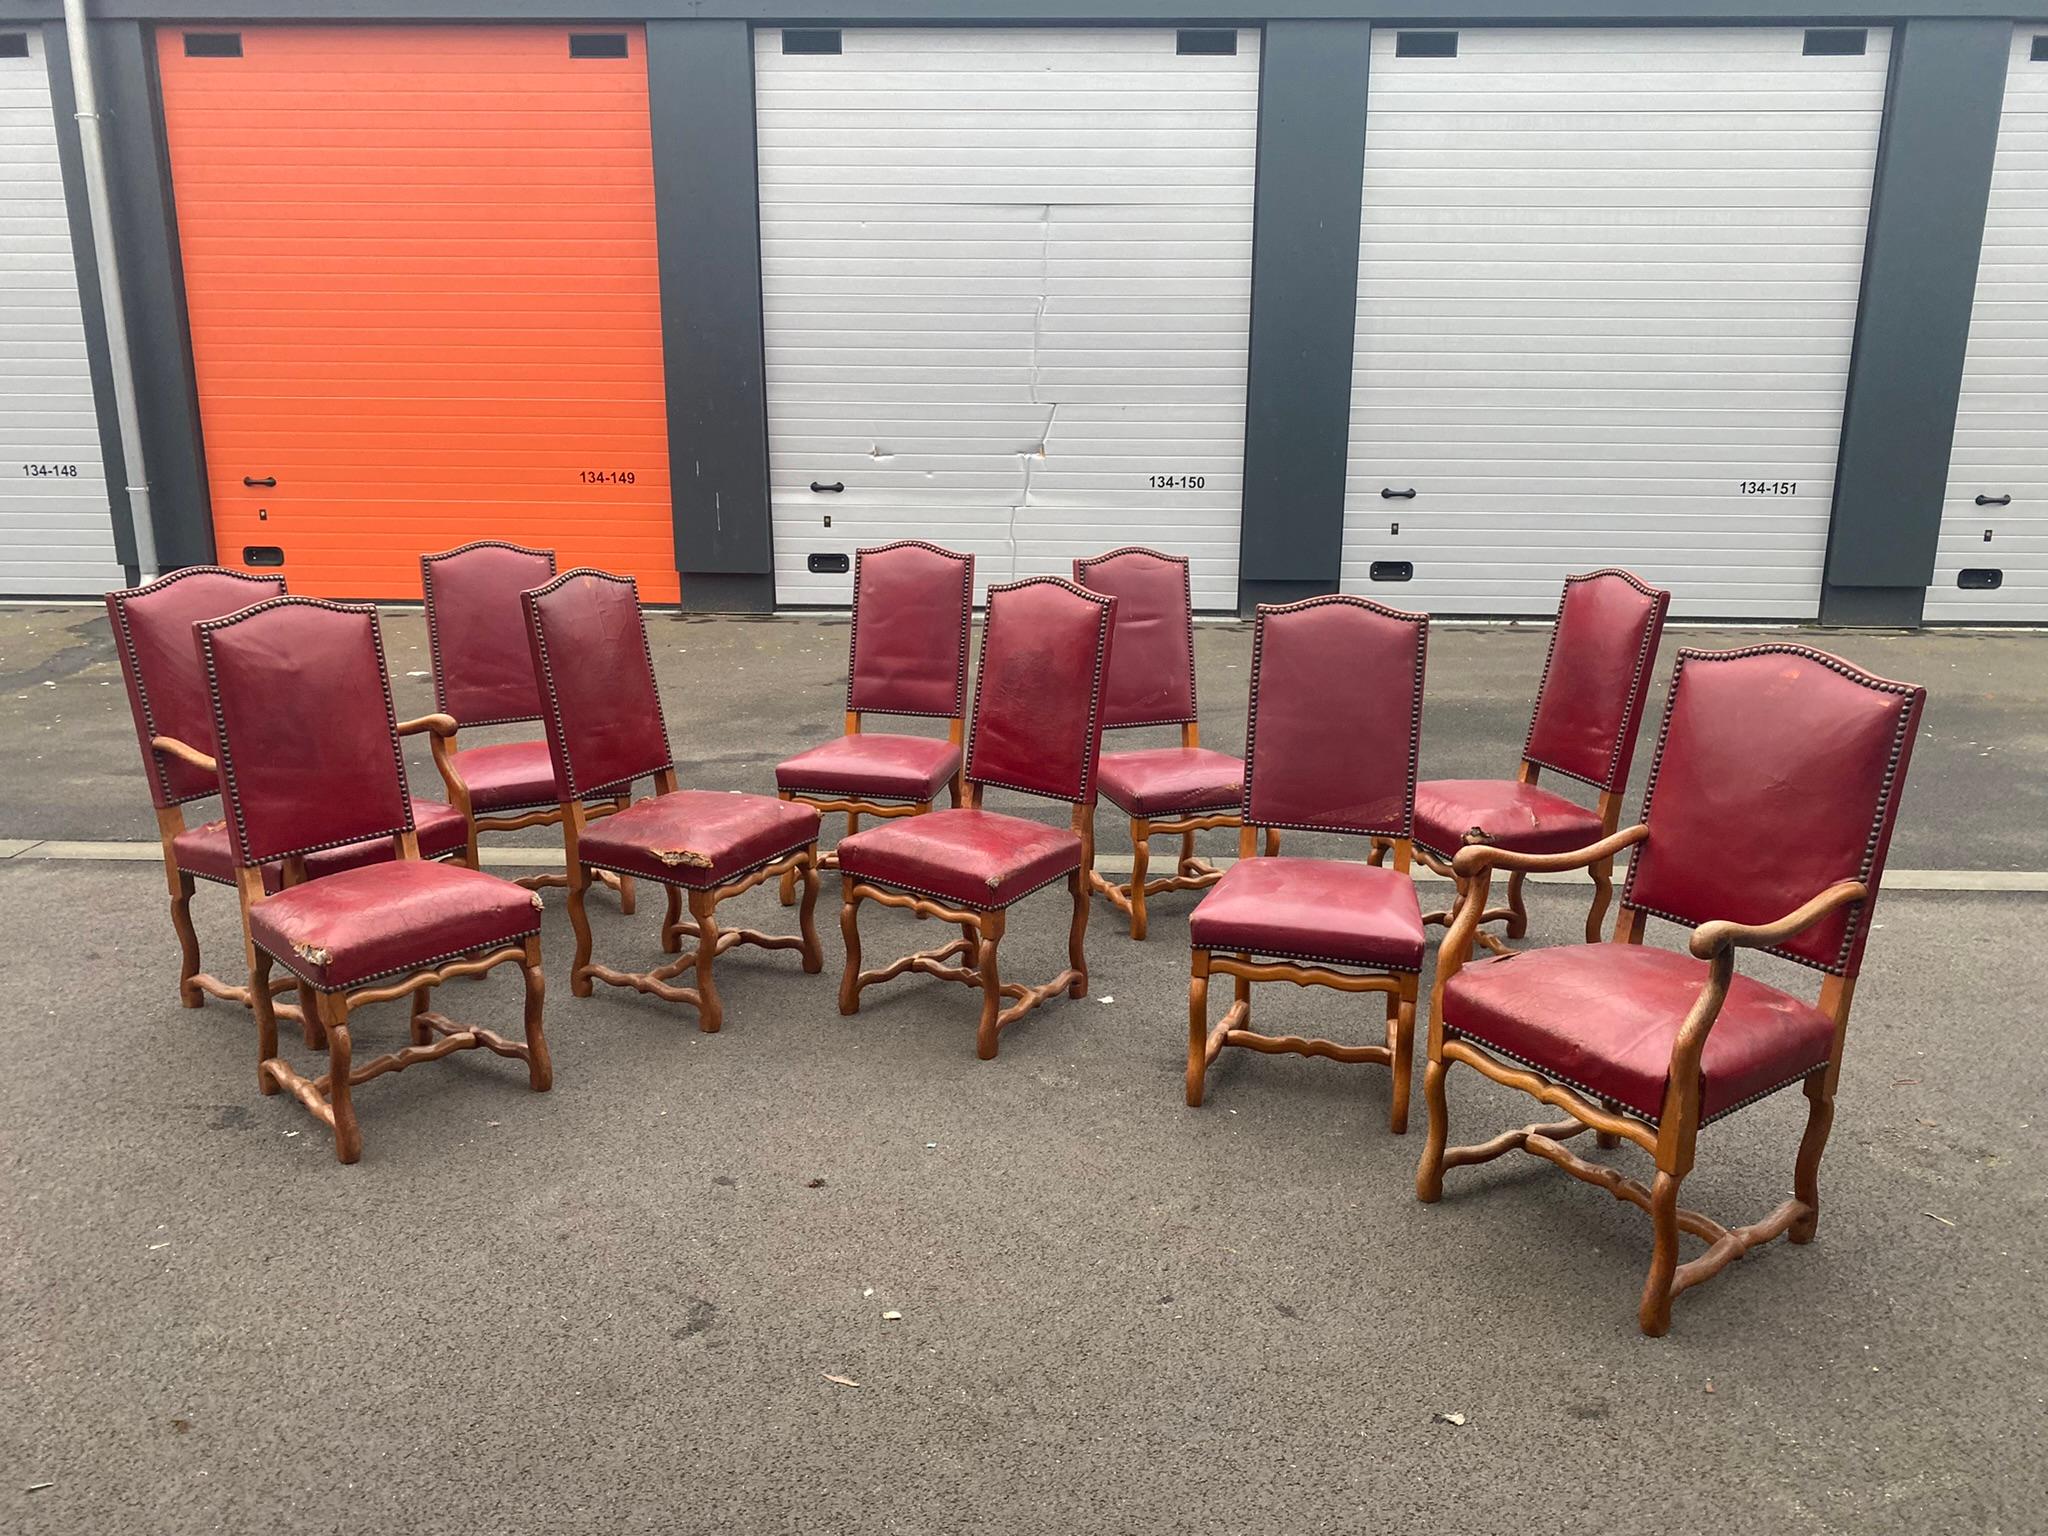 Satz von 10 antiken französischen Louis XIII Stil Os de Mouton Esszimmerstühlen
8 Stühle und 2 Sessel in Eiche und Leder, Polsterung komplett neu zu beziehen;
strukturen in gutem Zustand.